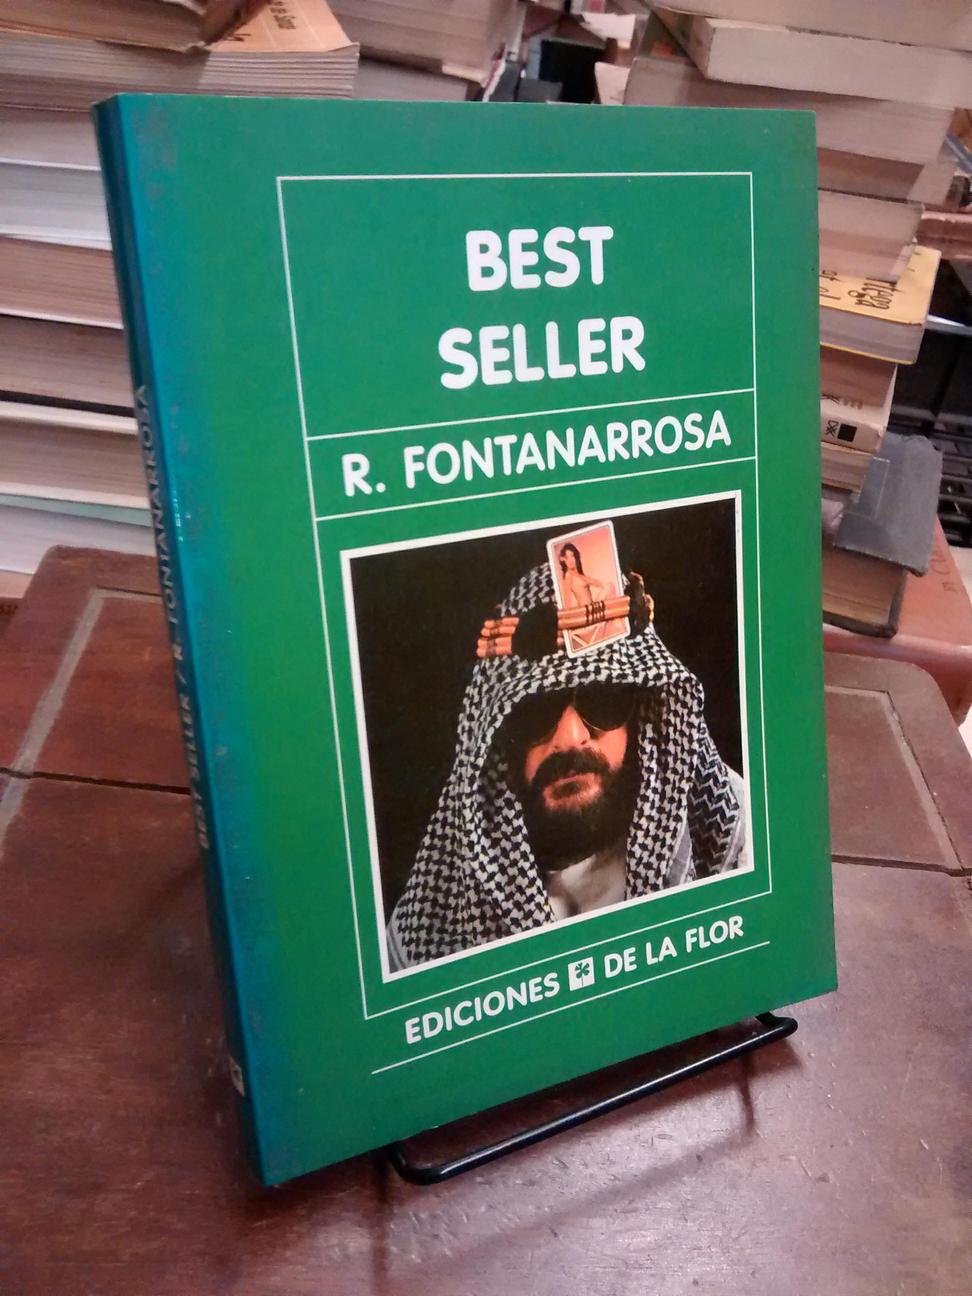 Best seller - Roberto Fontanarrosa